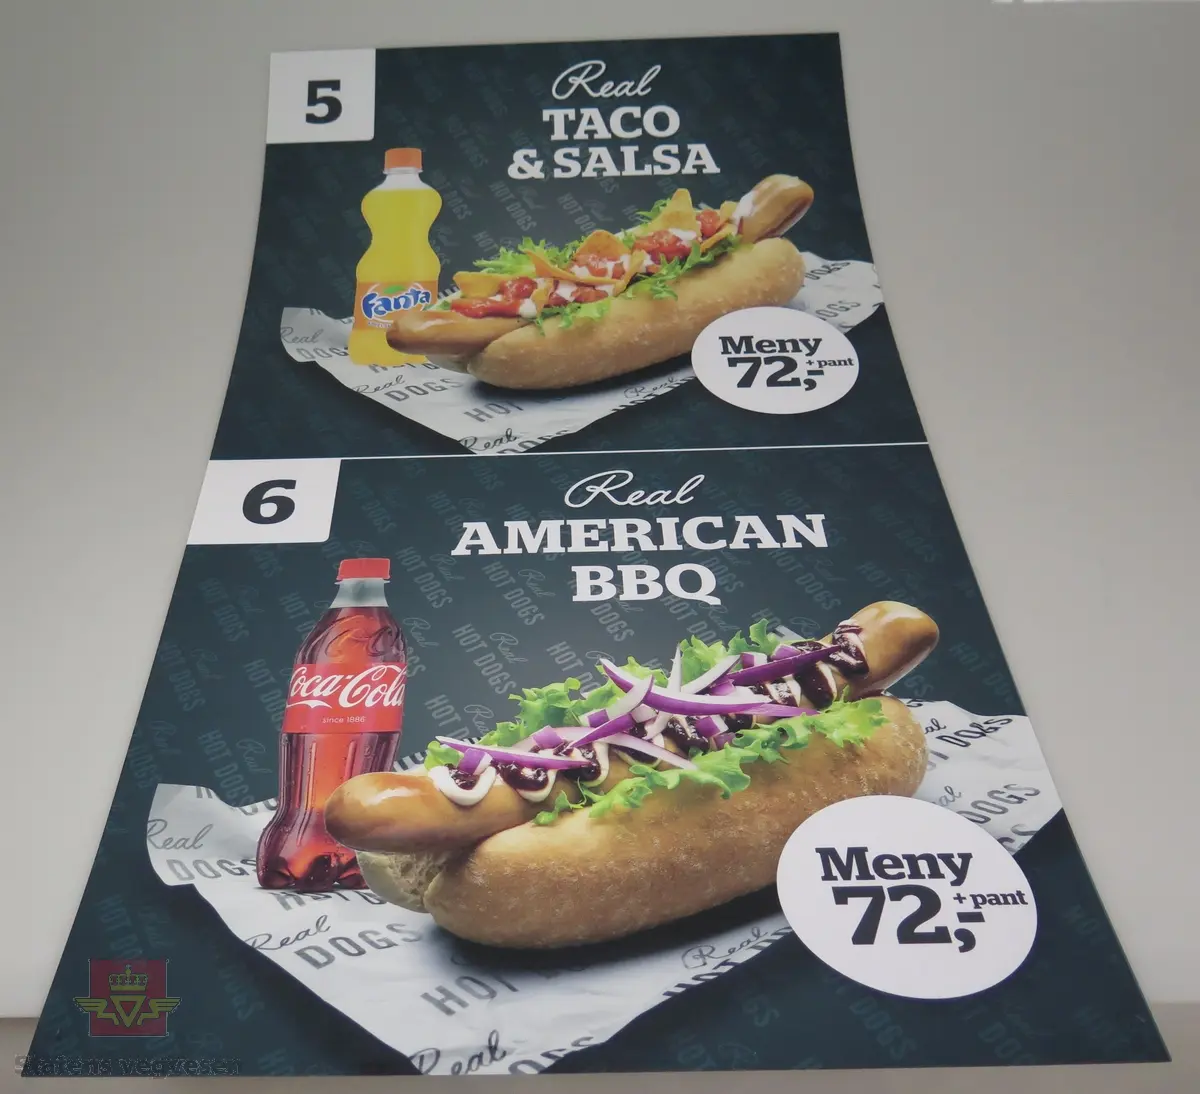 Sju ulike plakater av plast. De reklamerer for salg av pølser og hamburgere hos Statoil.